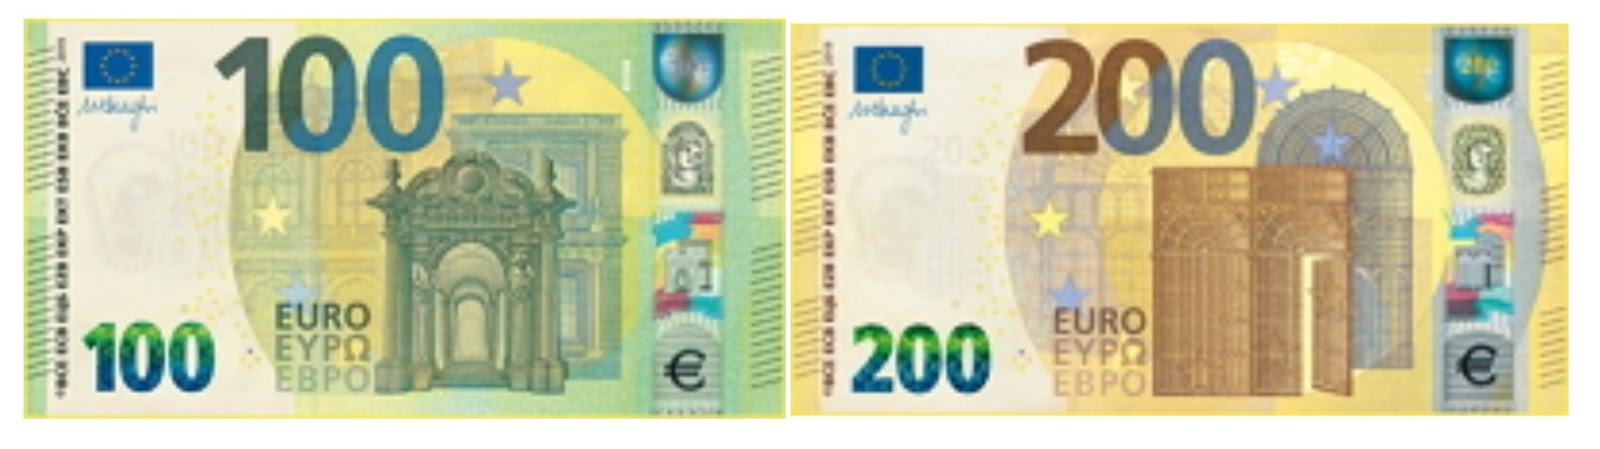 Банкноты 100 евро нового образца. Размер евро купюры